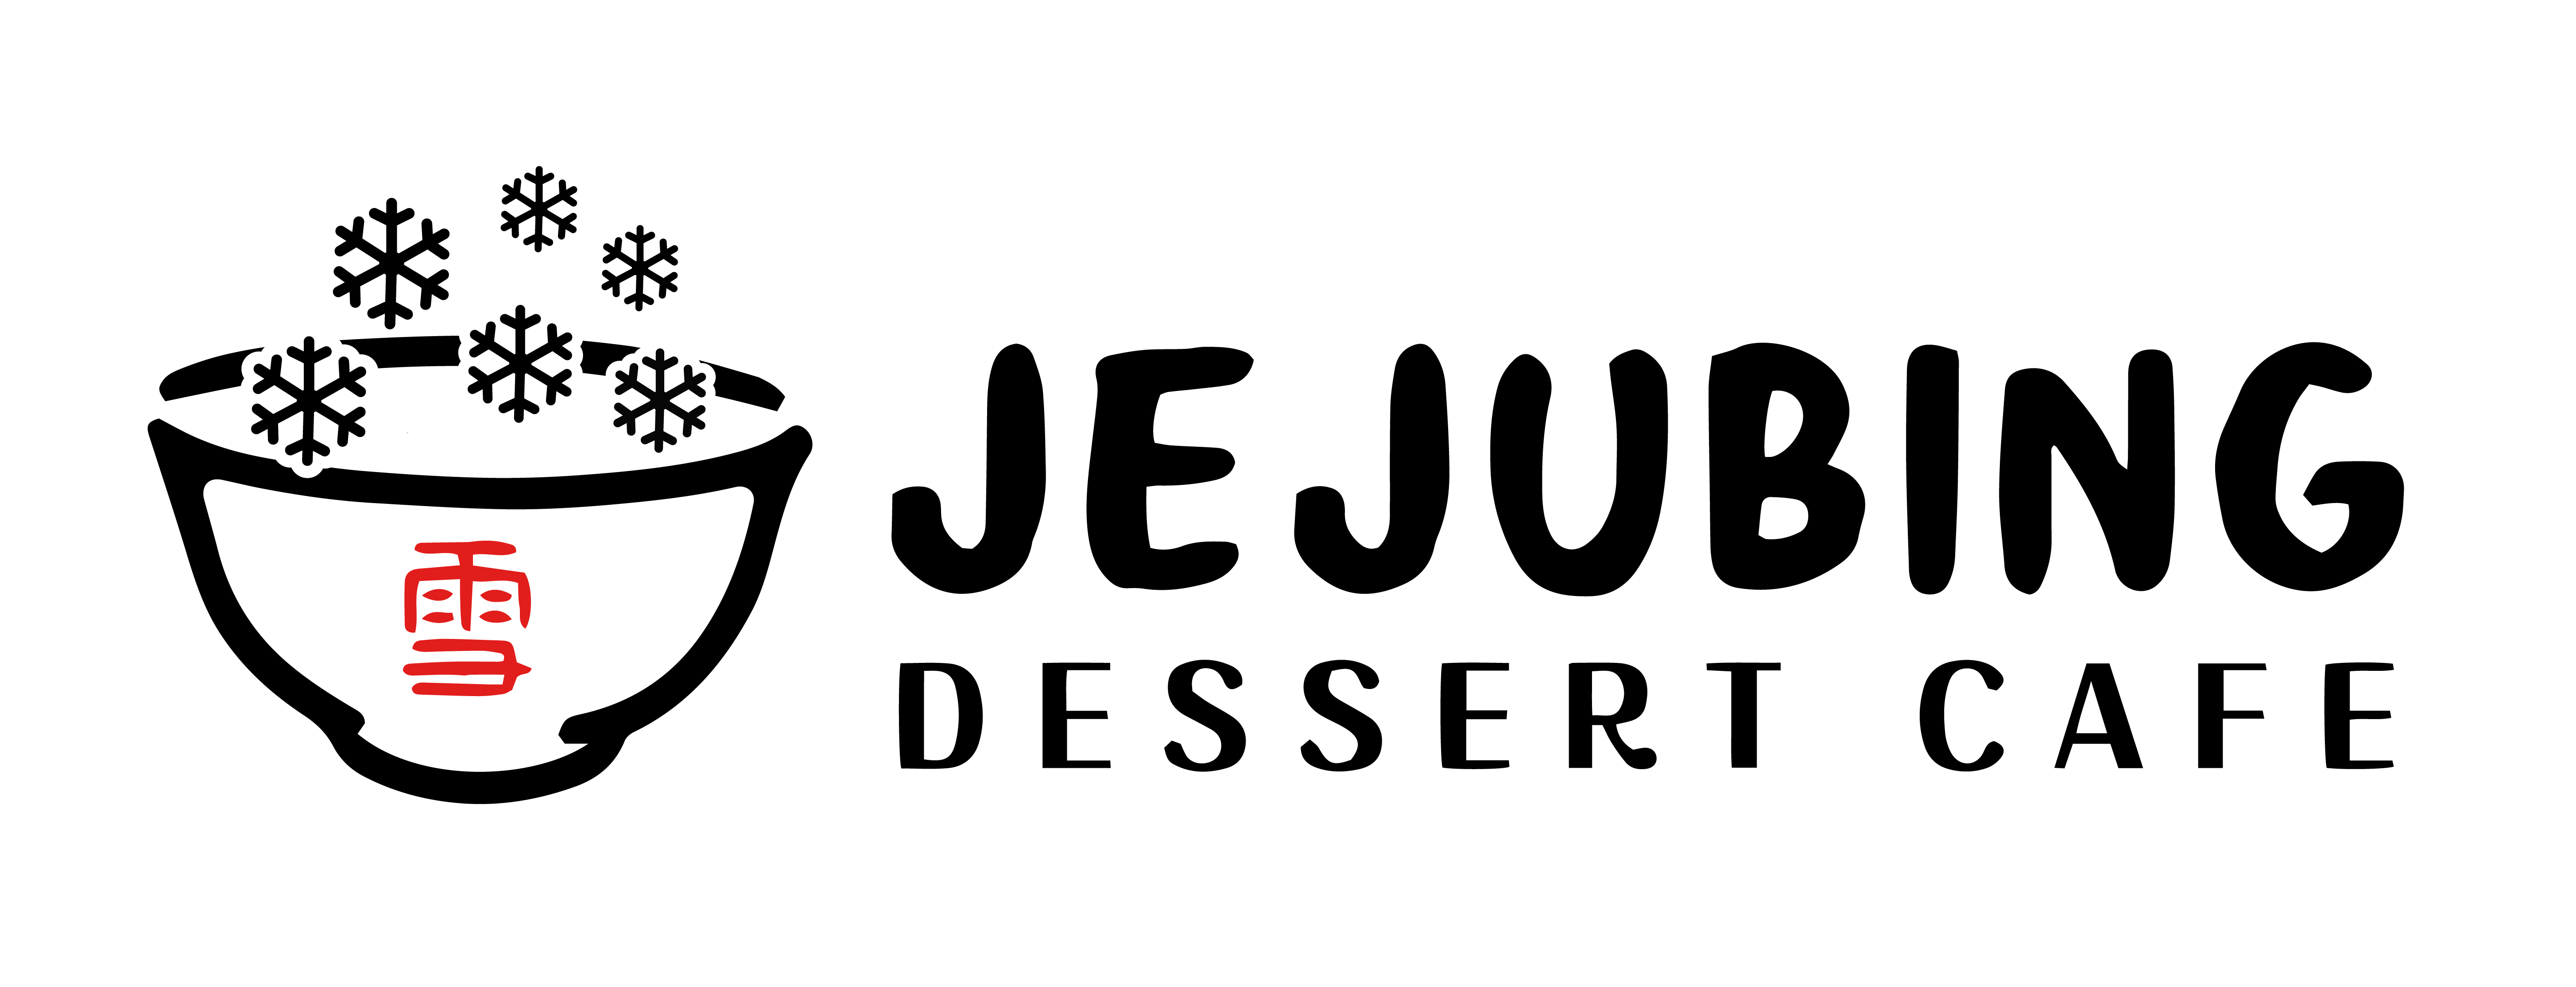 Jejubing Dessert Cafe Logo